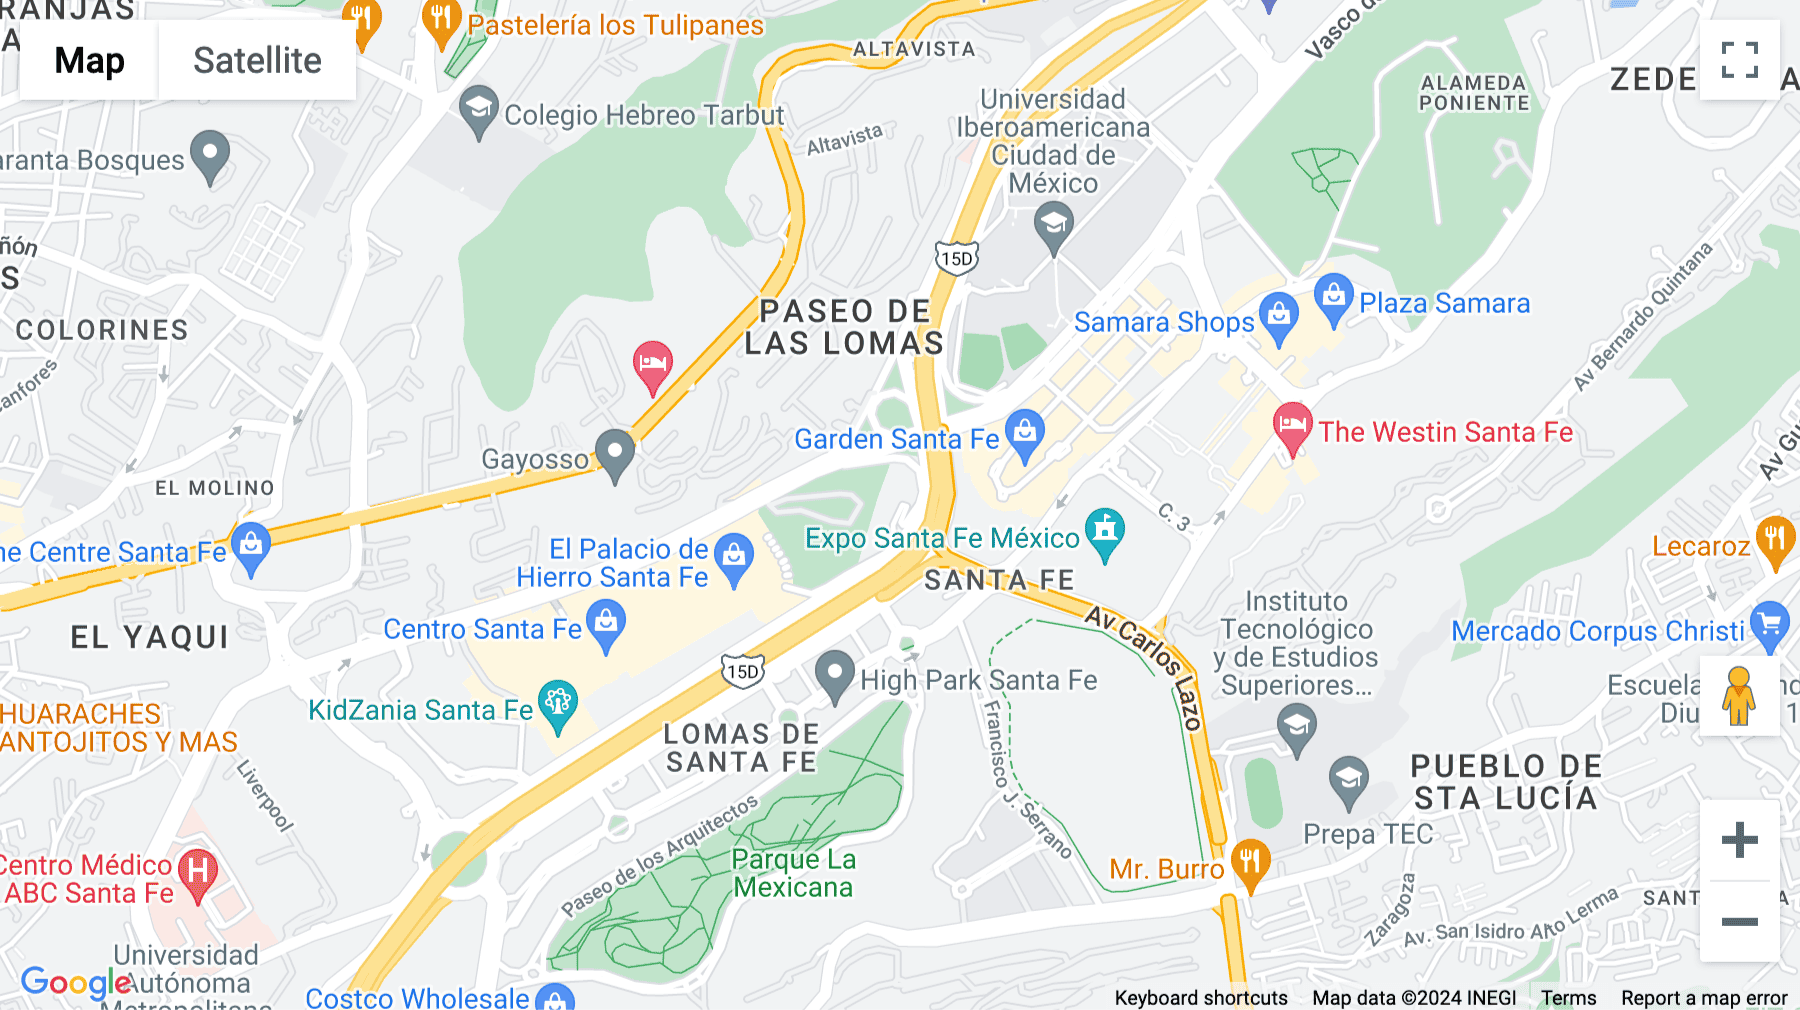 Click for interative map of 1015 Prolongación Paseo de la Reforma, Ciudad de México, Mexico City